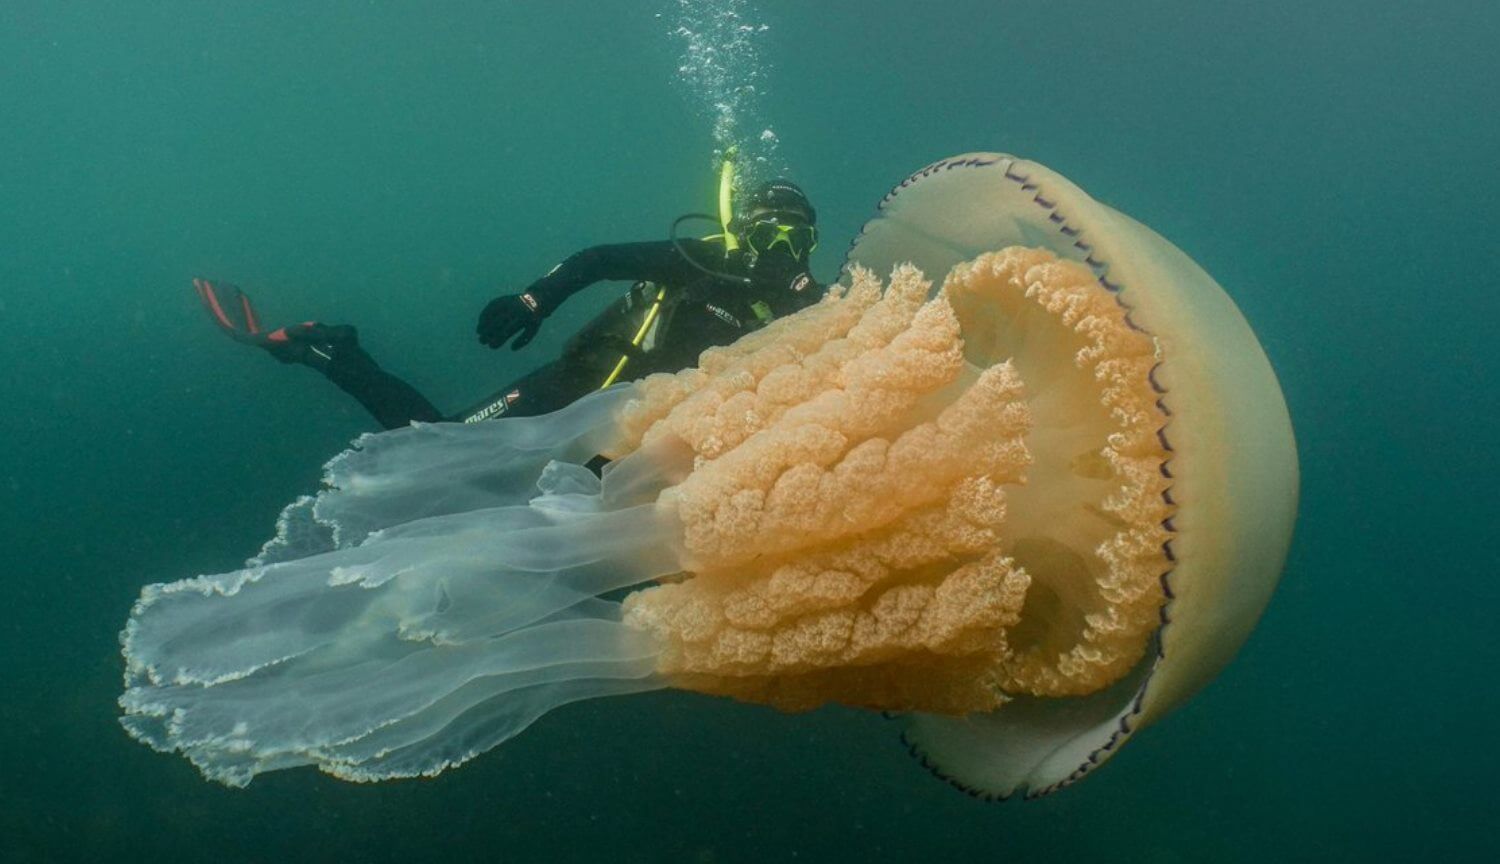 #vídeo | En el reino unido, han encontrado la medusa gigante del tamaño de una persona